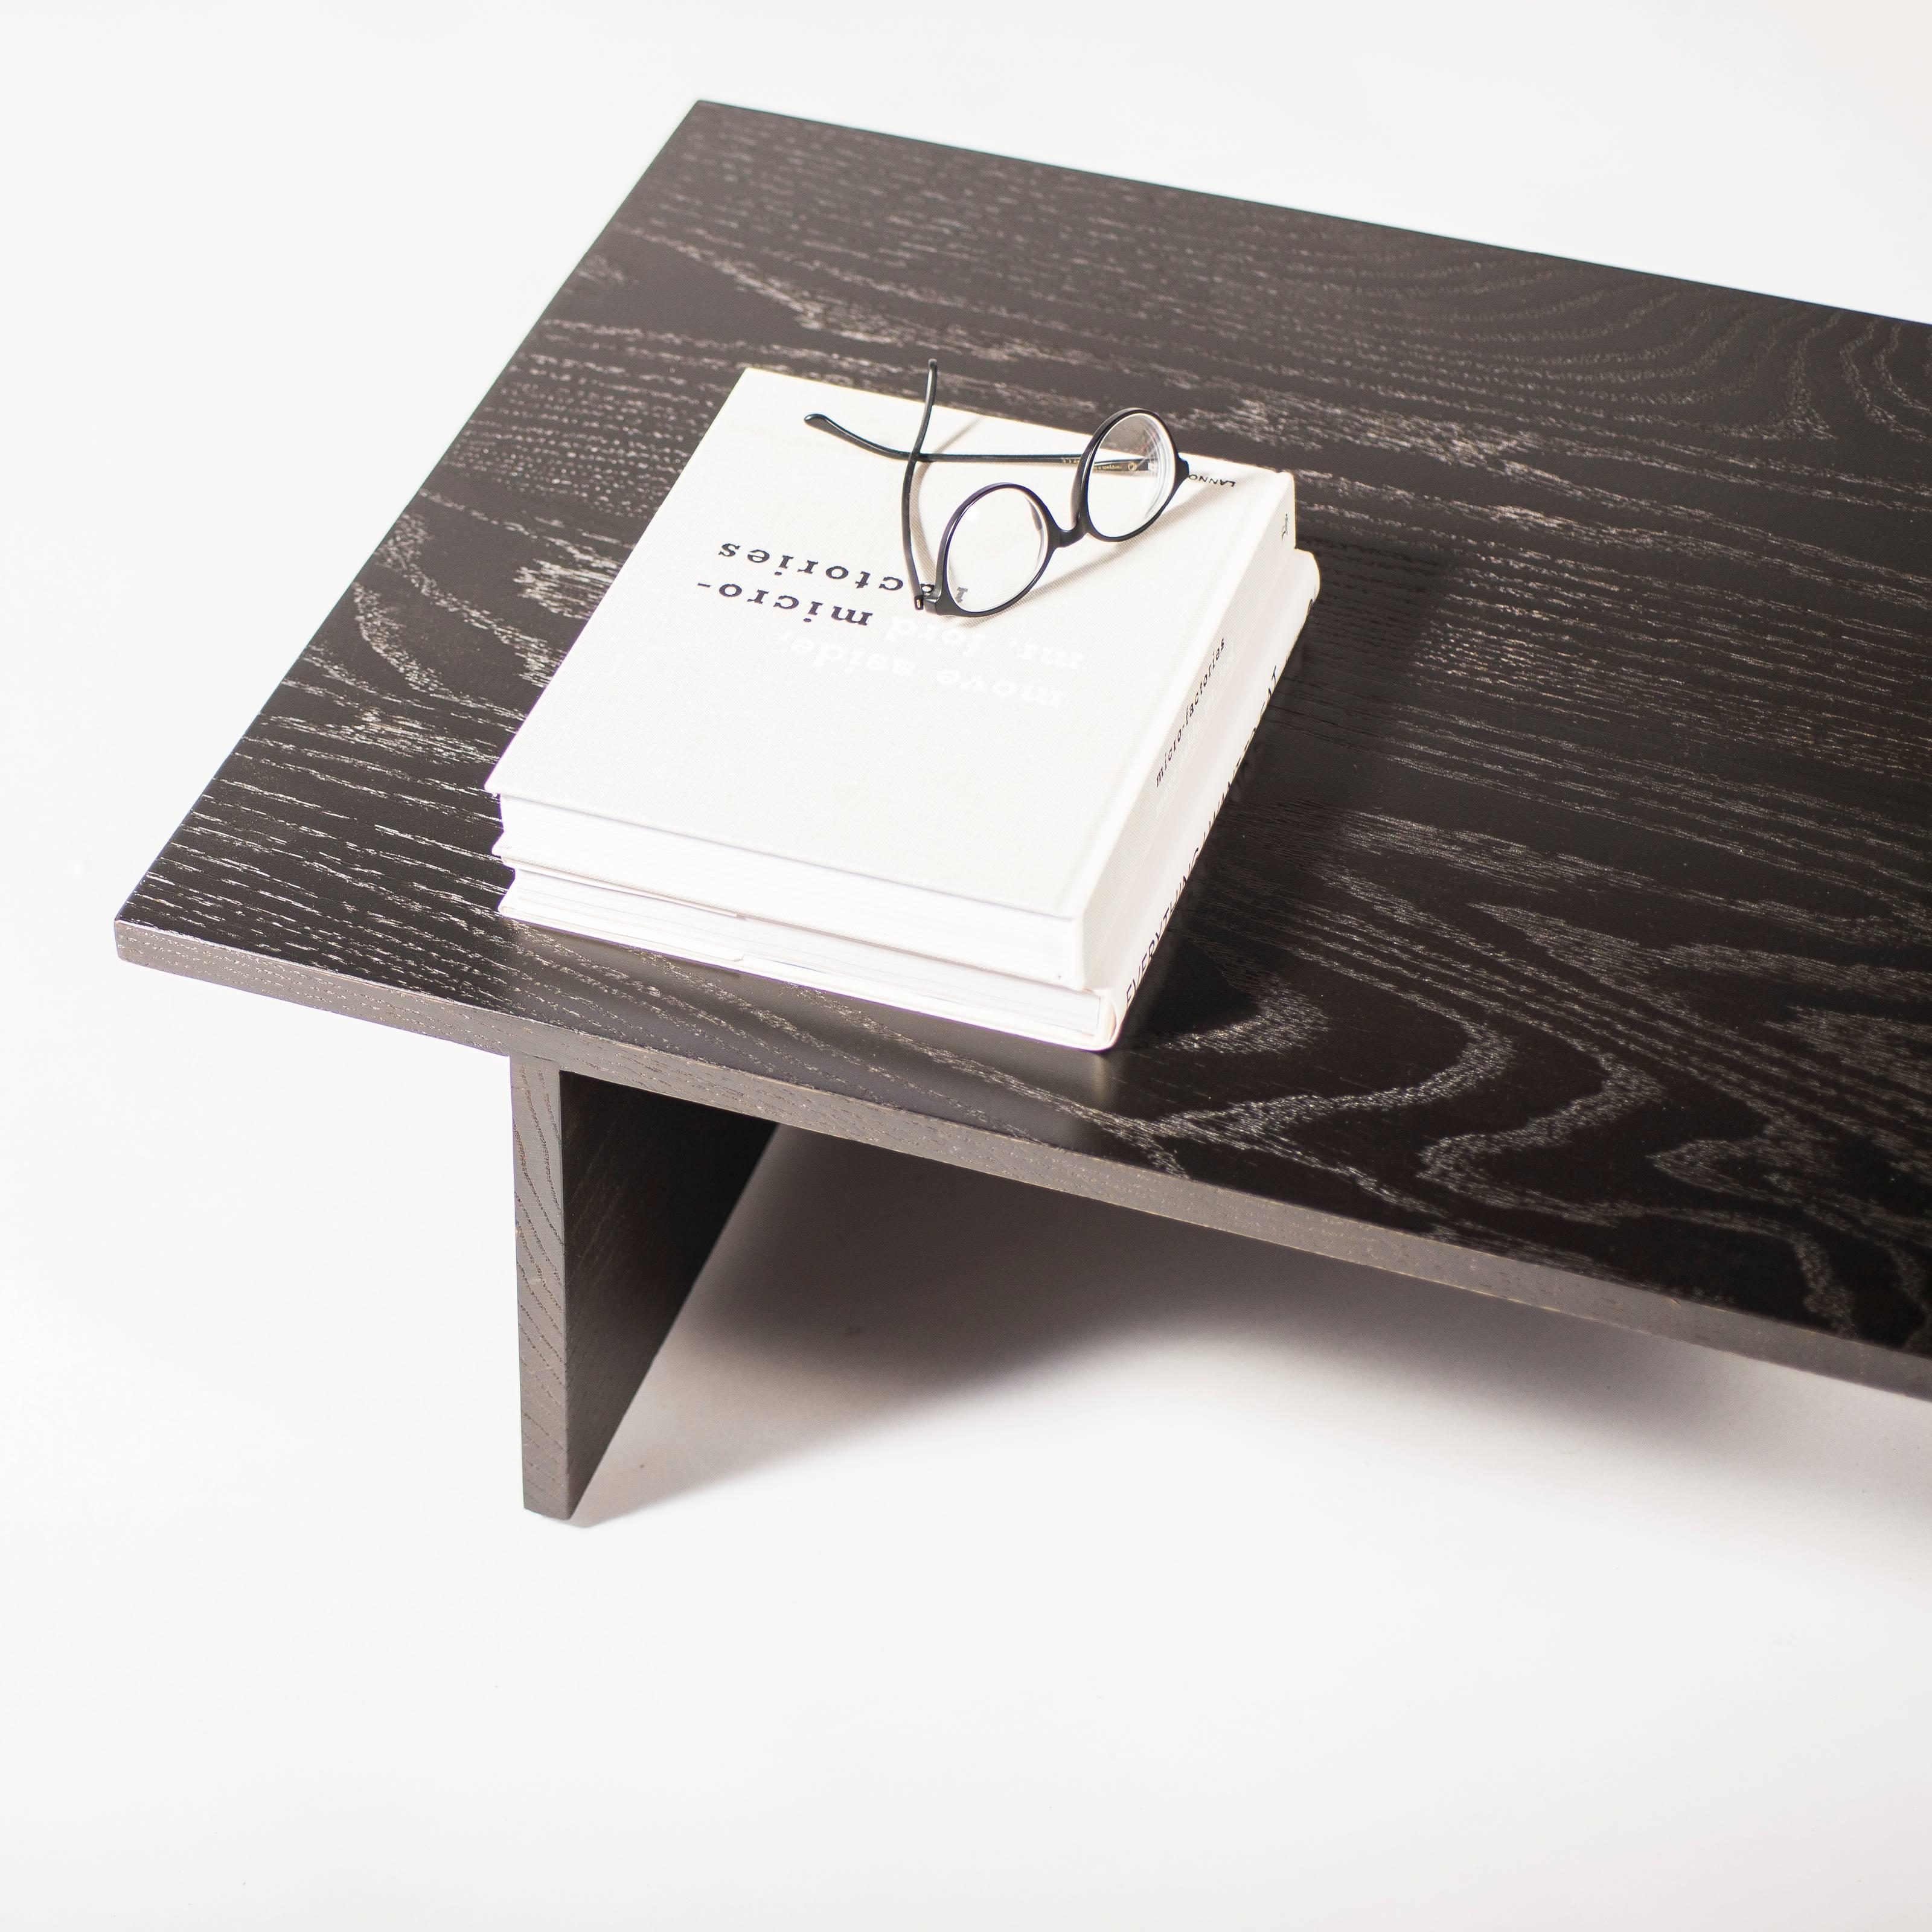 Cette table basse met l'accent sur la simplicité et la beauté naturelle du bois. Qu'il soit naturel ou en finition laquée noire, les veines de ce plateau de table contemporain en chêne séduisent l'esprit et détendent le corps. Simple.